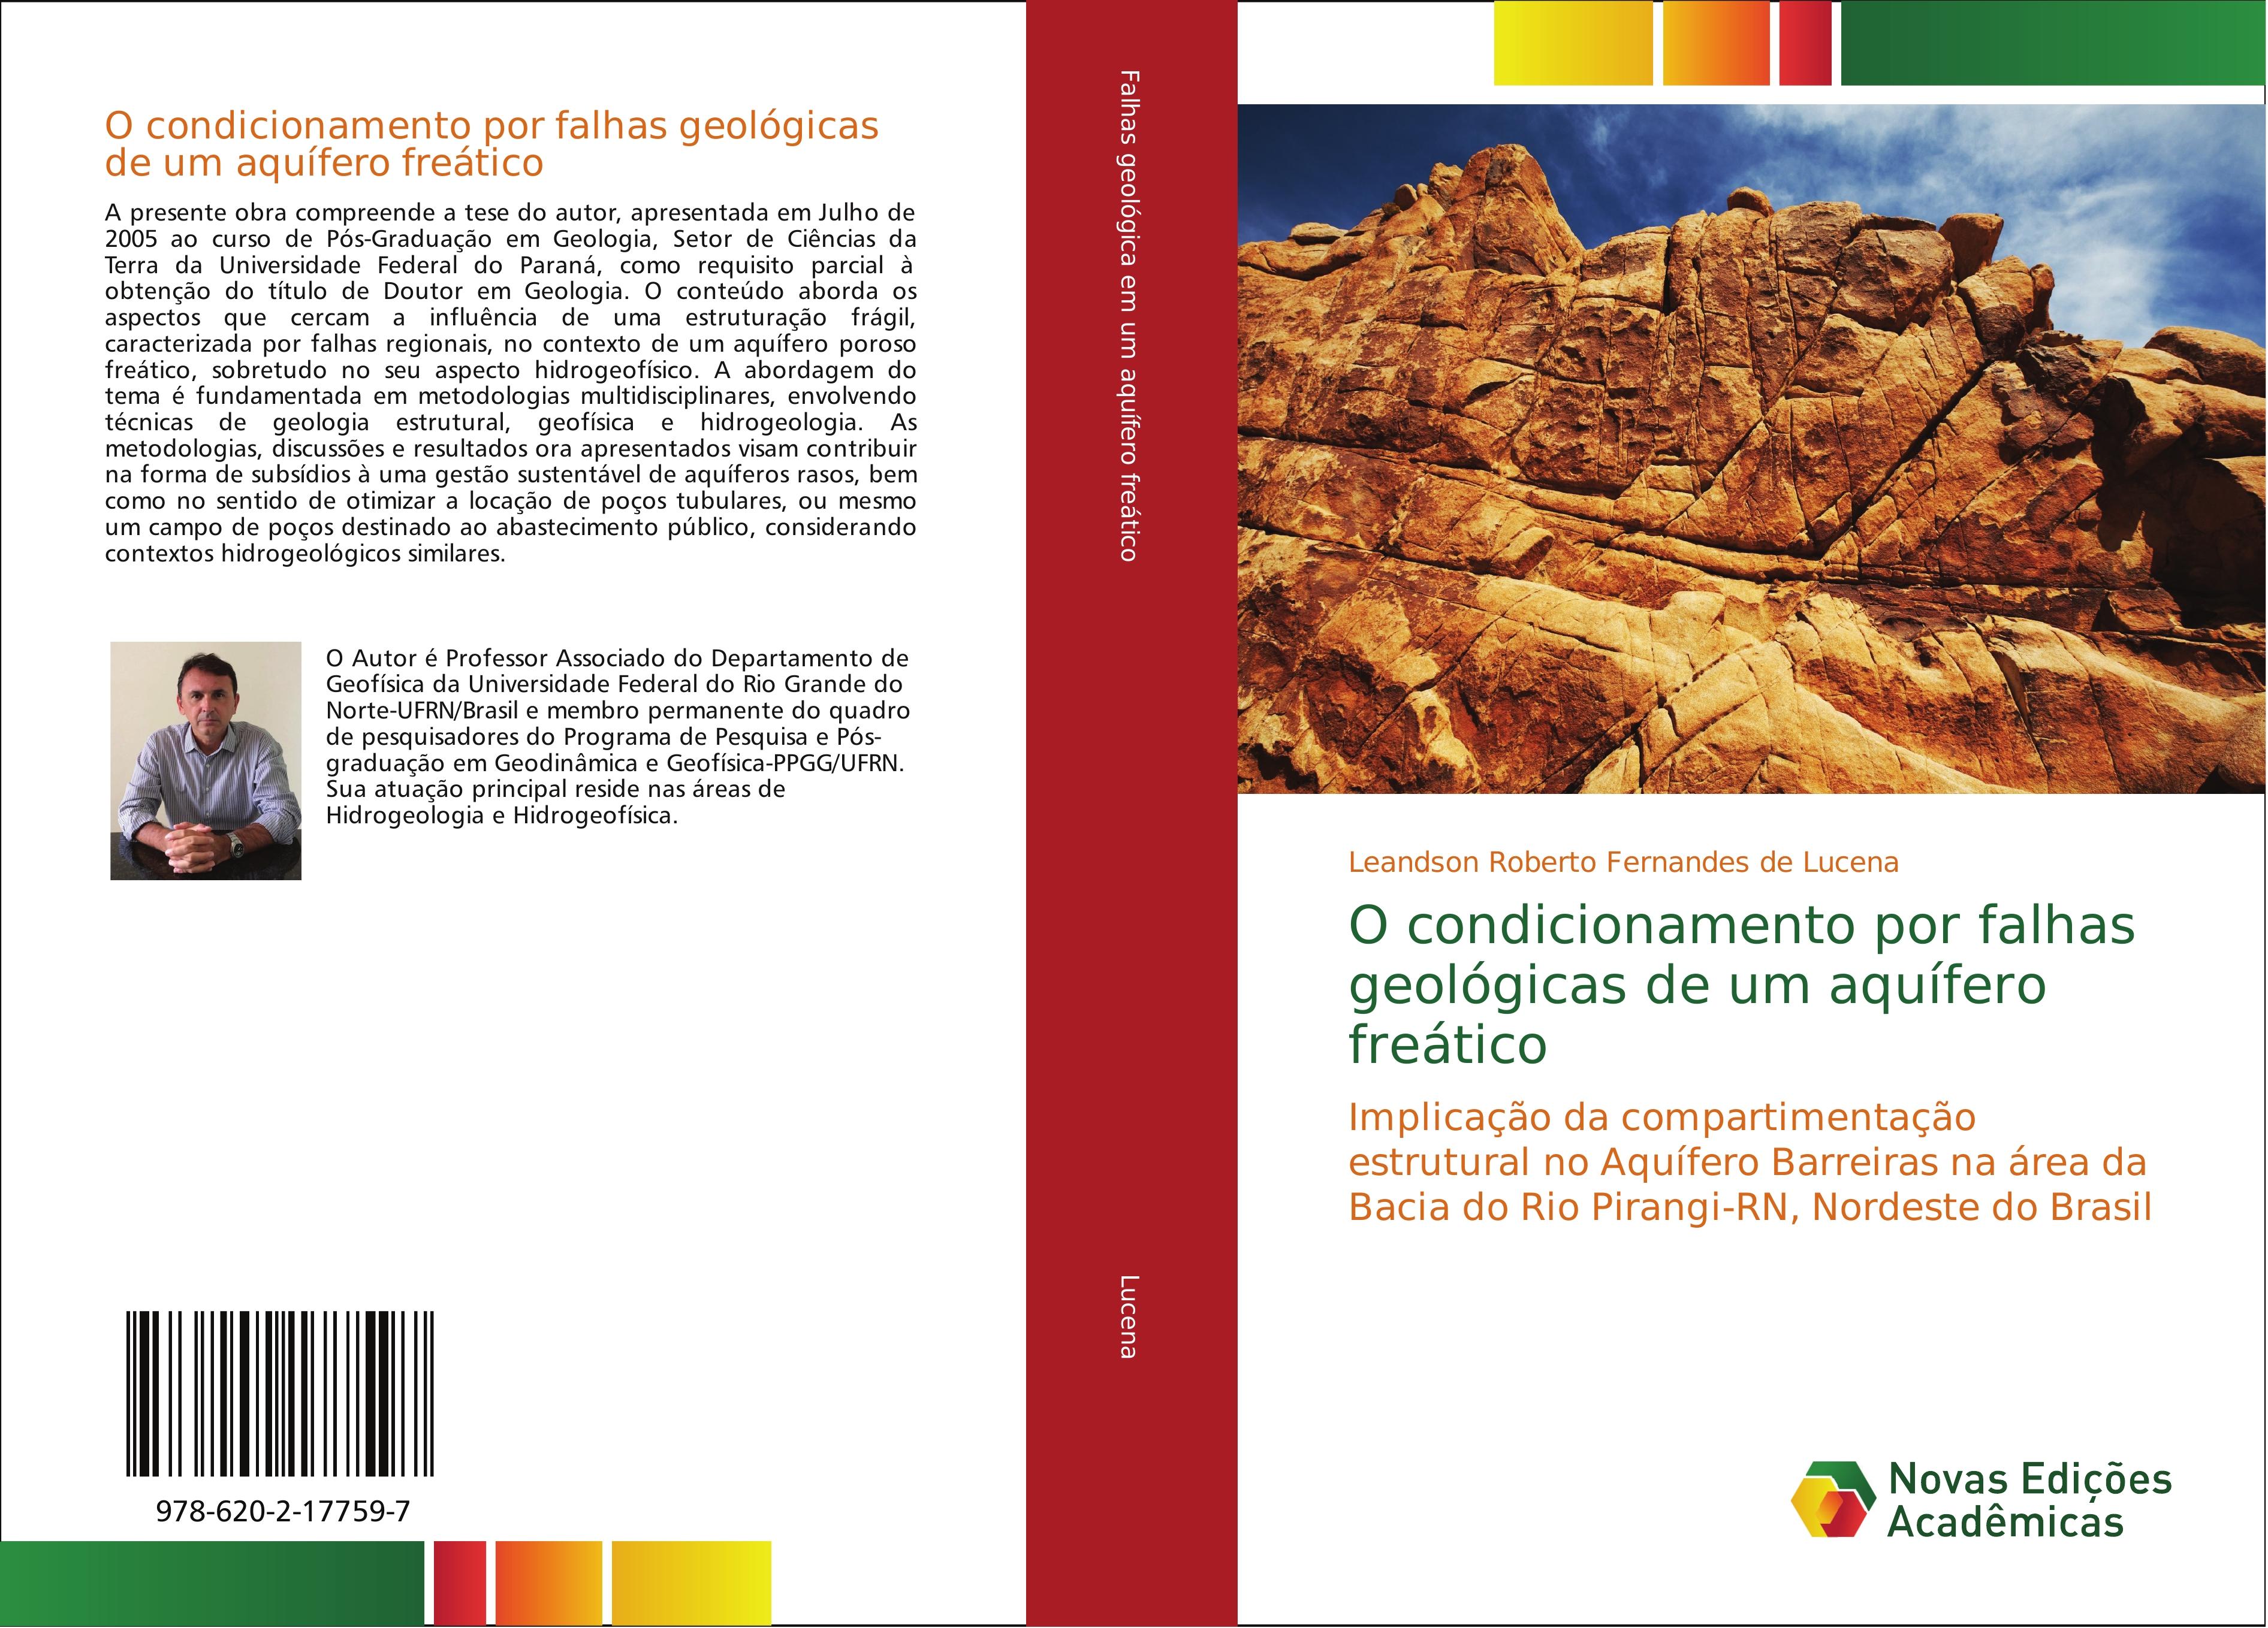 O condicionamento por falhas geológicas de um aquífero freático - Leandson Roberto Fernandes de Lucena